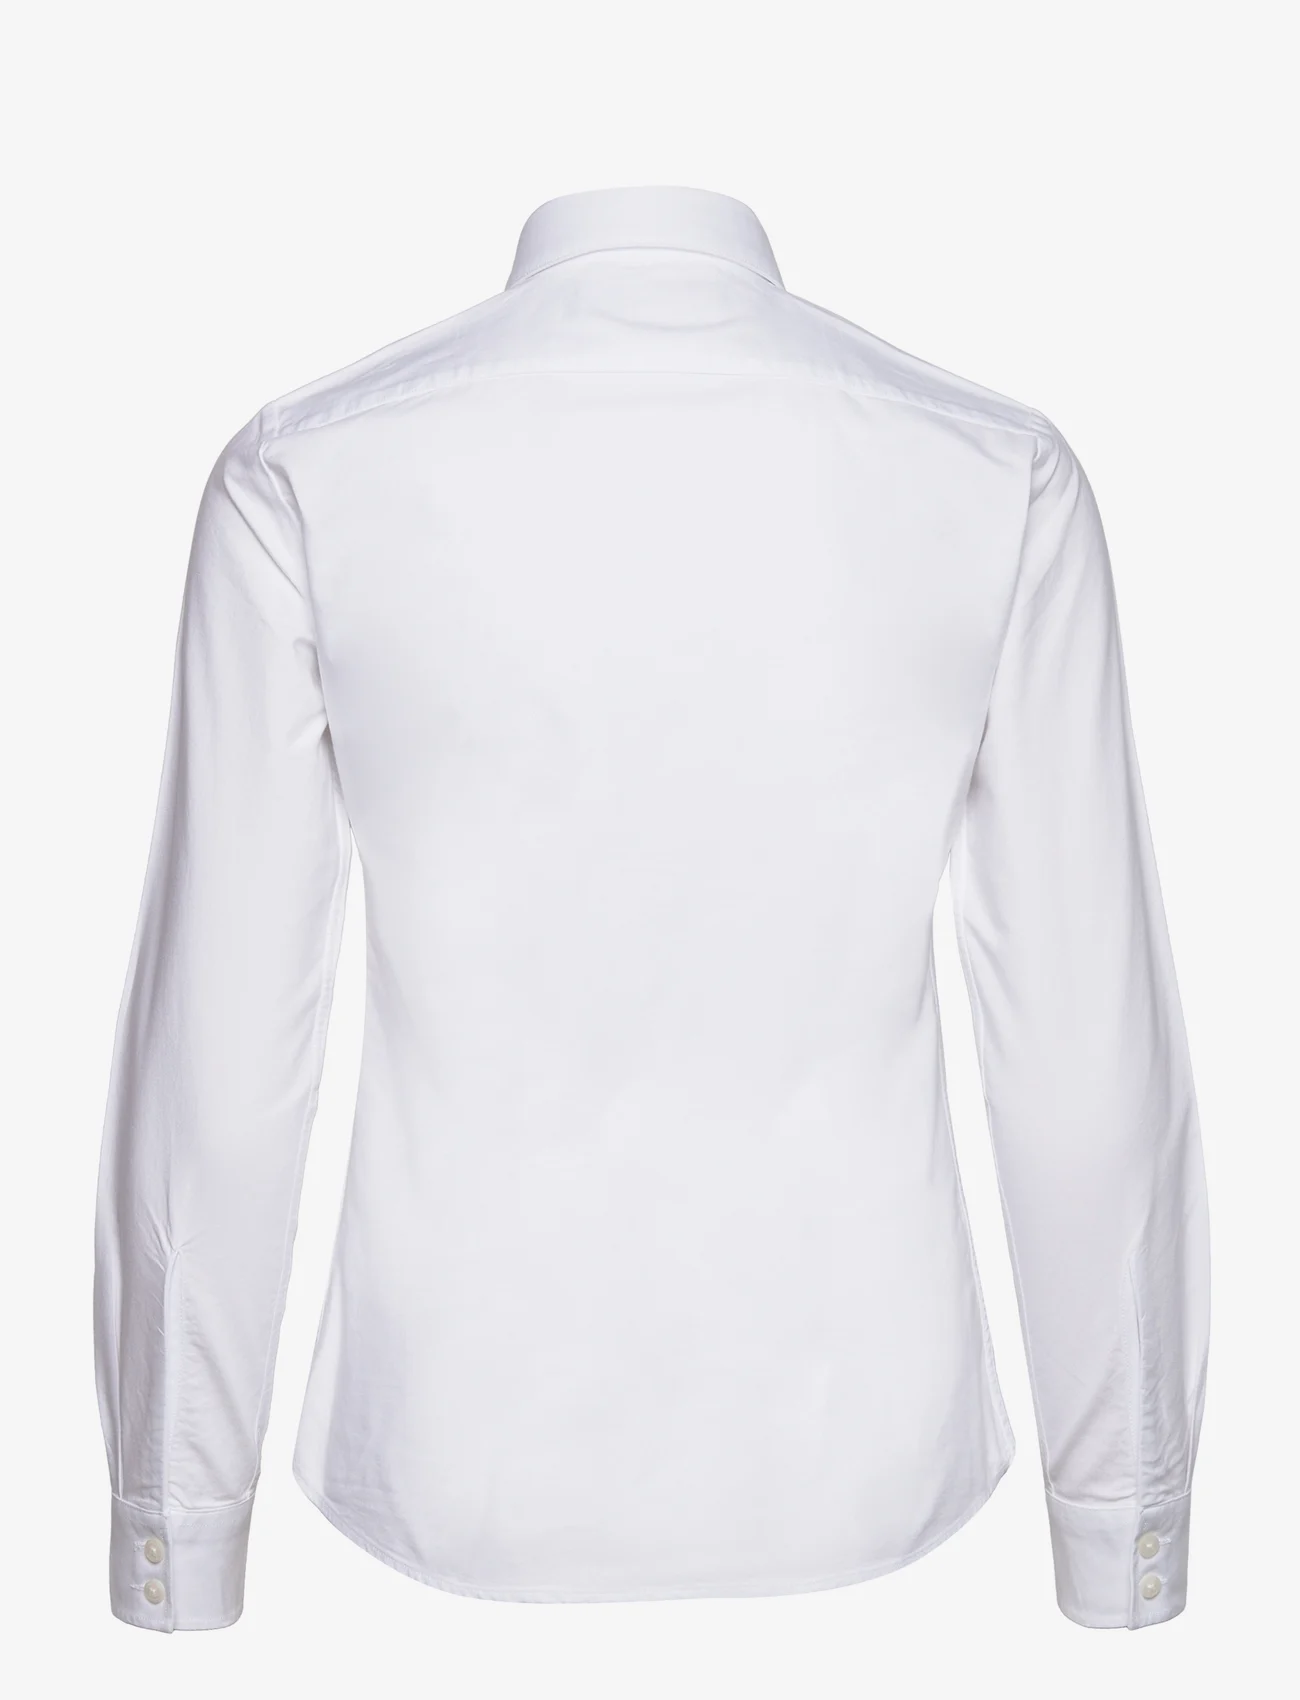 Musto - OXF LS SHIRT FW - marškiniai ilgomis rankovėmis - 002 bright white - 1